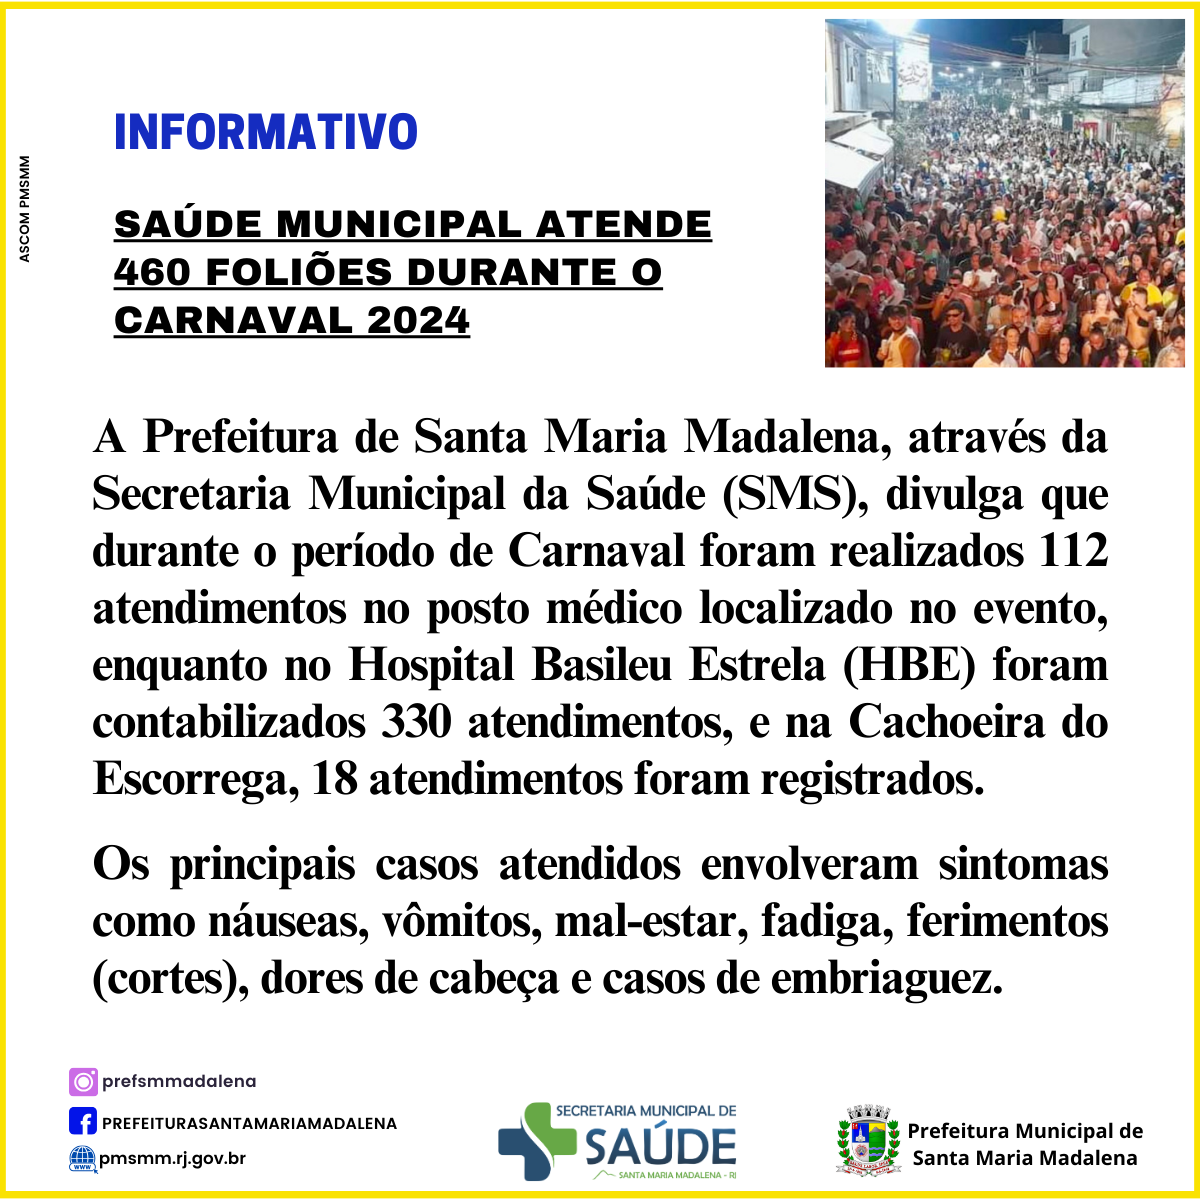 Saúde Municipal atende 460 foliões durante o carnaval 2024